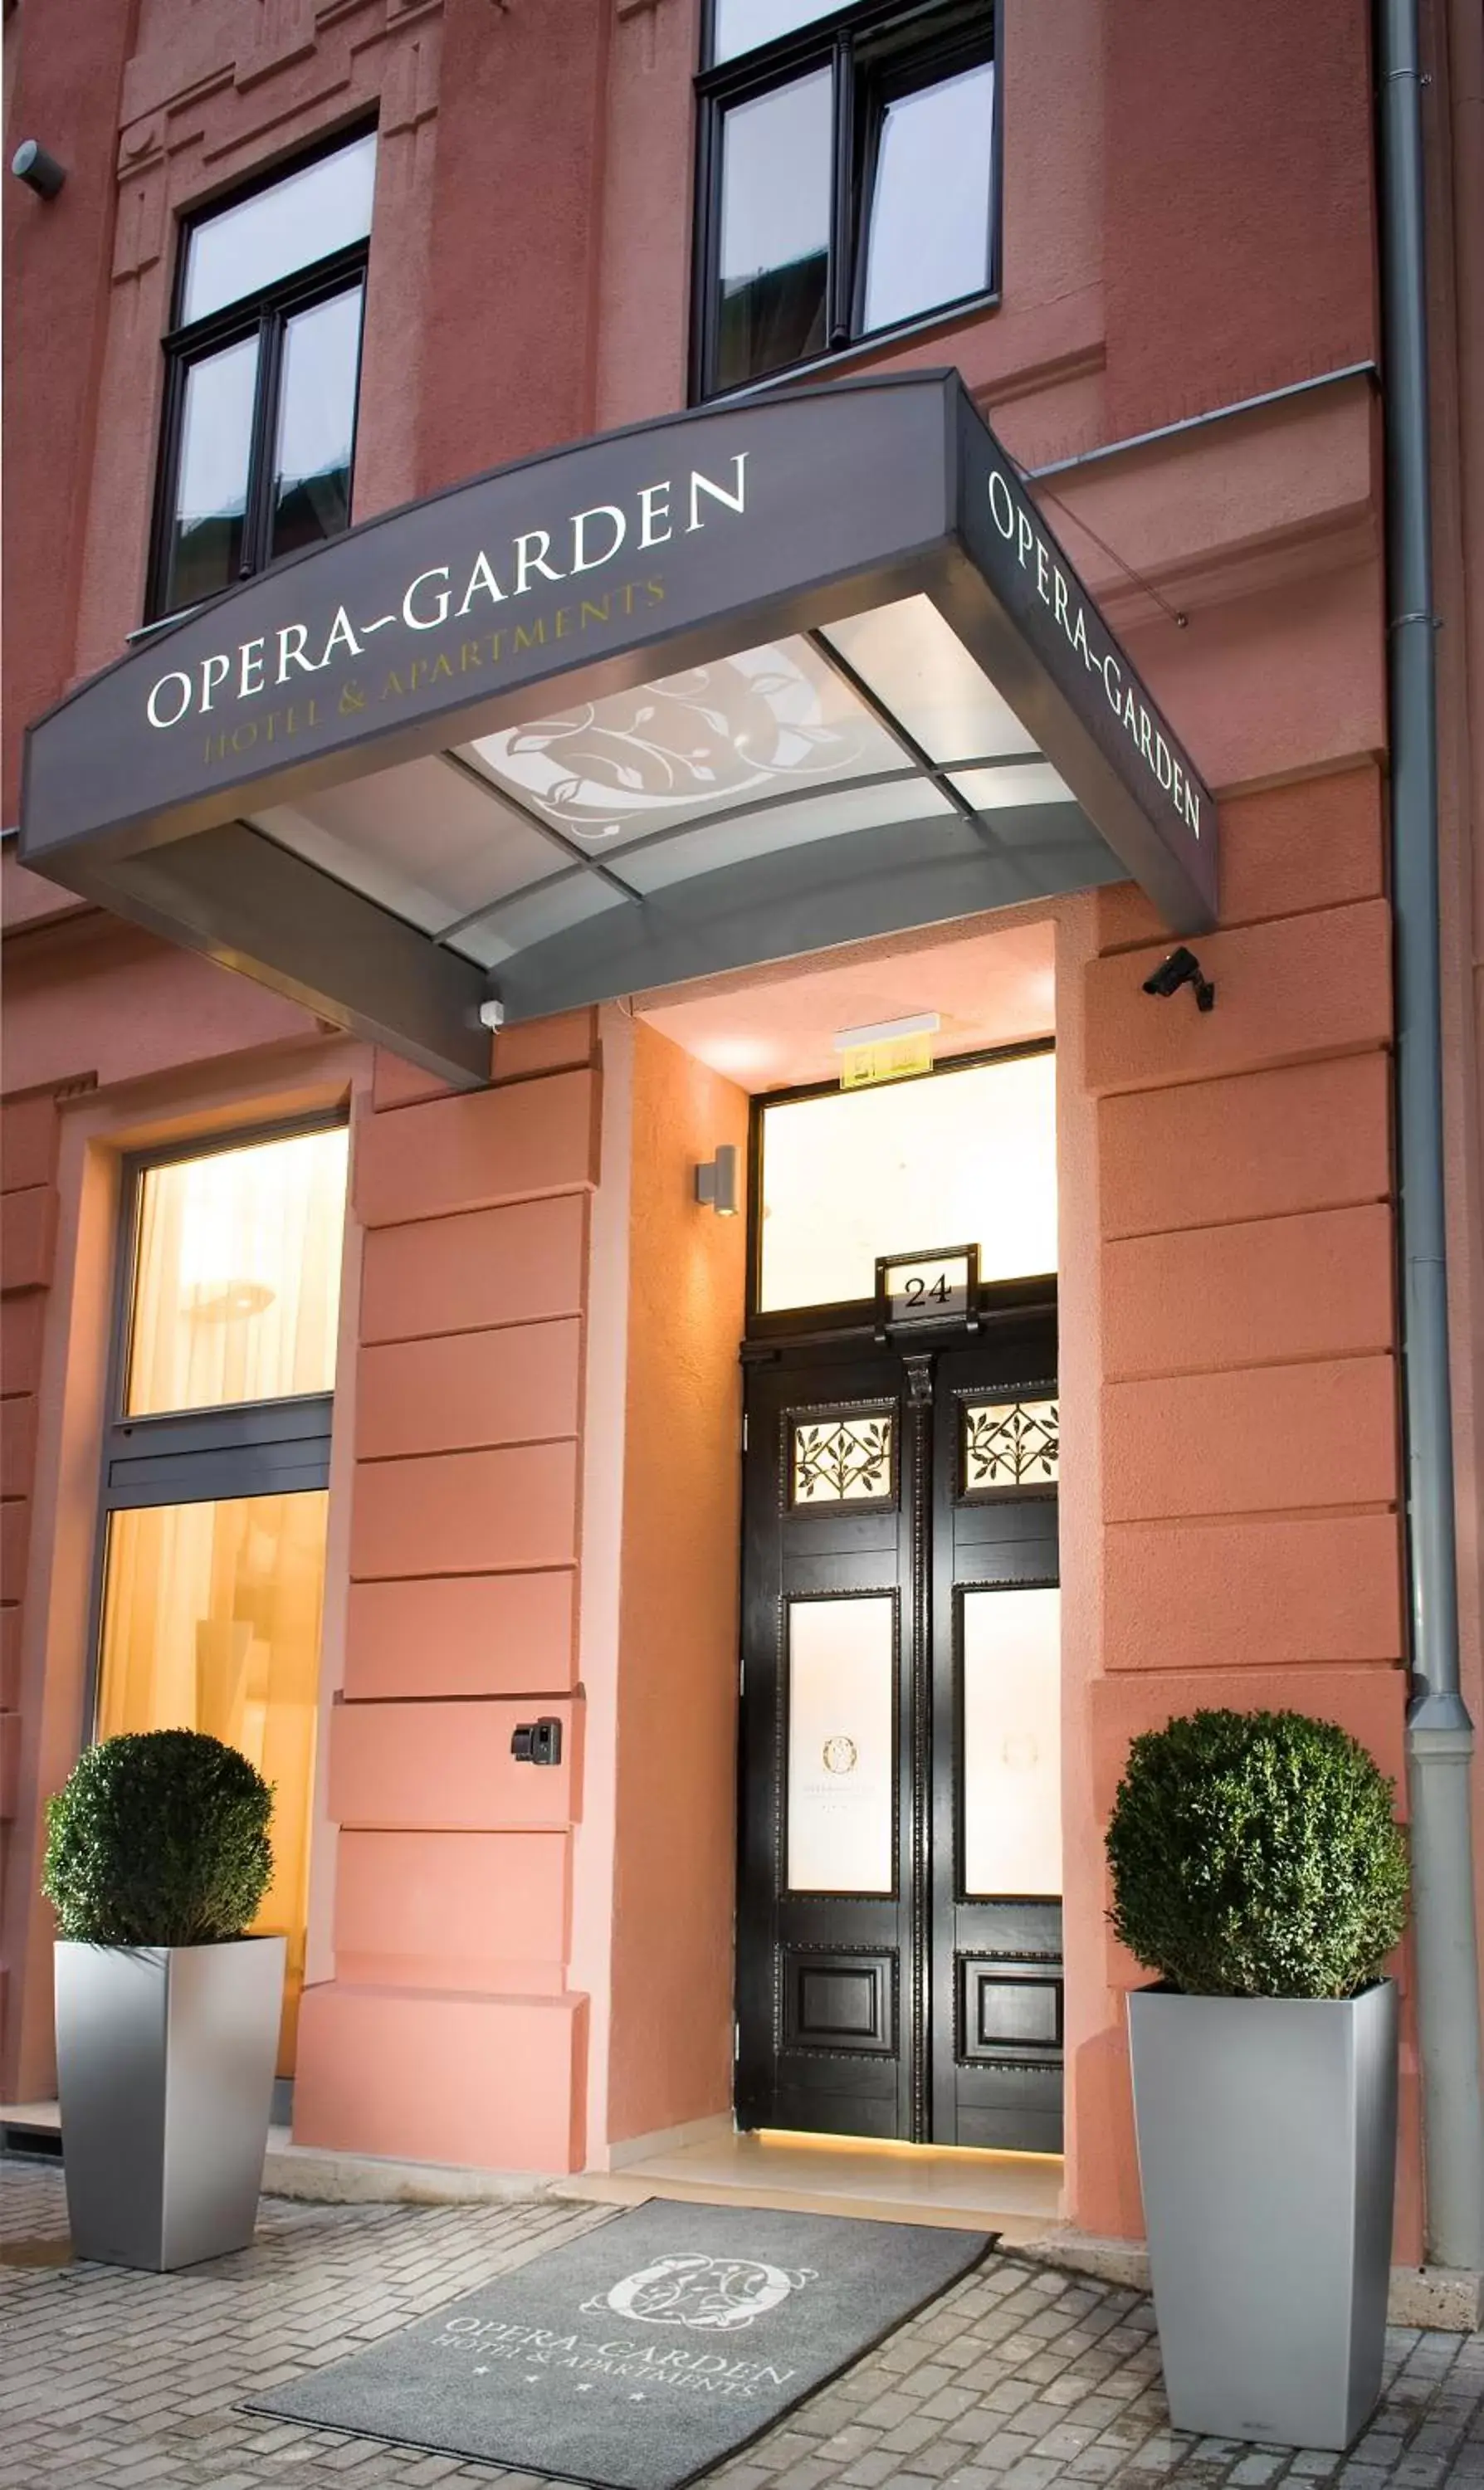 Facade/entrance in Opera Garden Hotel & Apartments